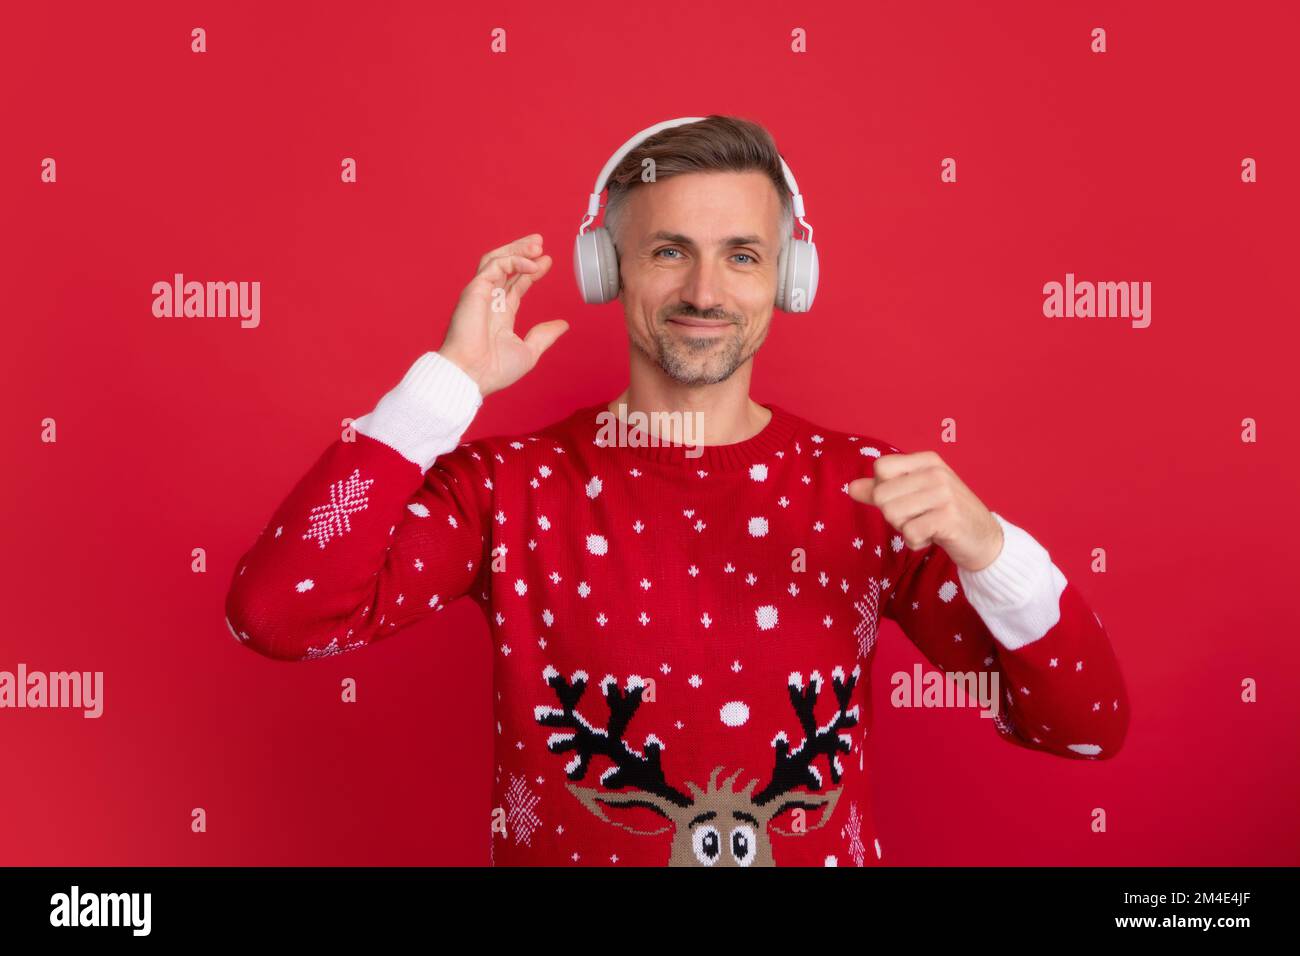 Weihnachtsmusik. Weihnachtsmann mit Kopfhörern. Porträt des weihnachtsmanns auf rotem Studiohintergrund. Stockfoto